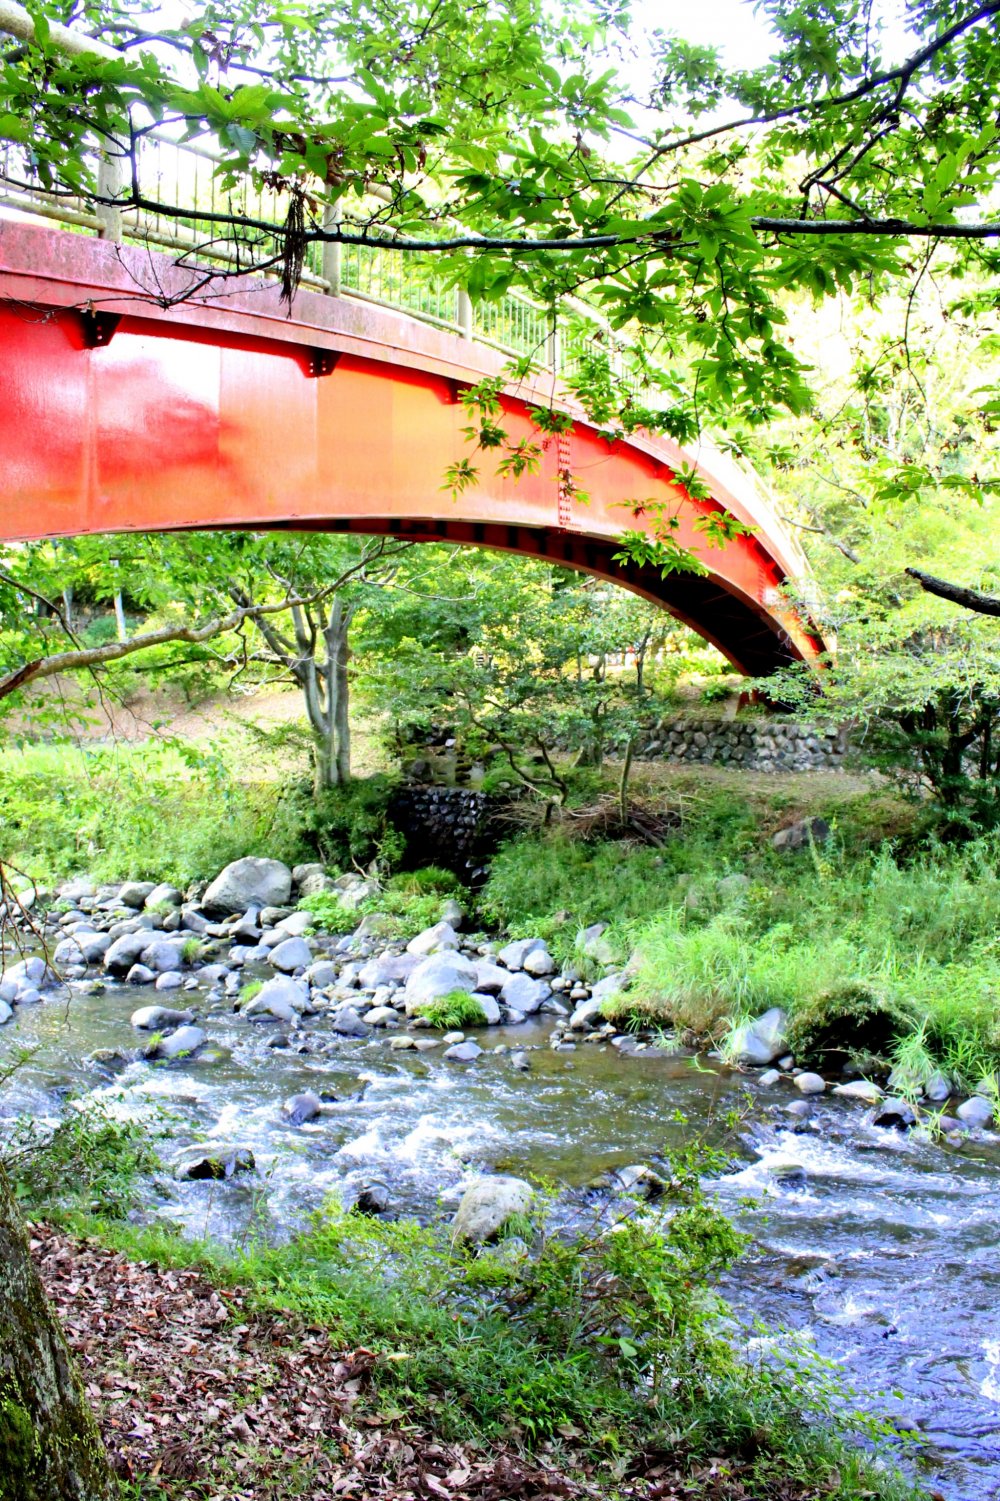 Cây cầu đỏ bắc qua vùng nước nông chảy ào ạt tạo nên một sự tương phản hoàn hảo với khung cảnh xanh mát xung quanh